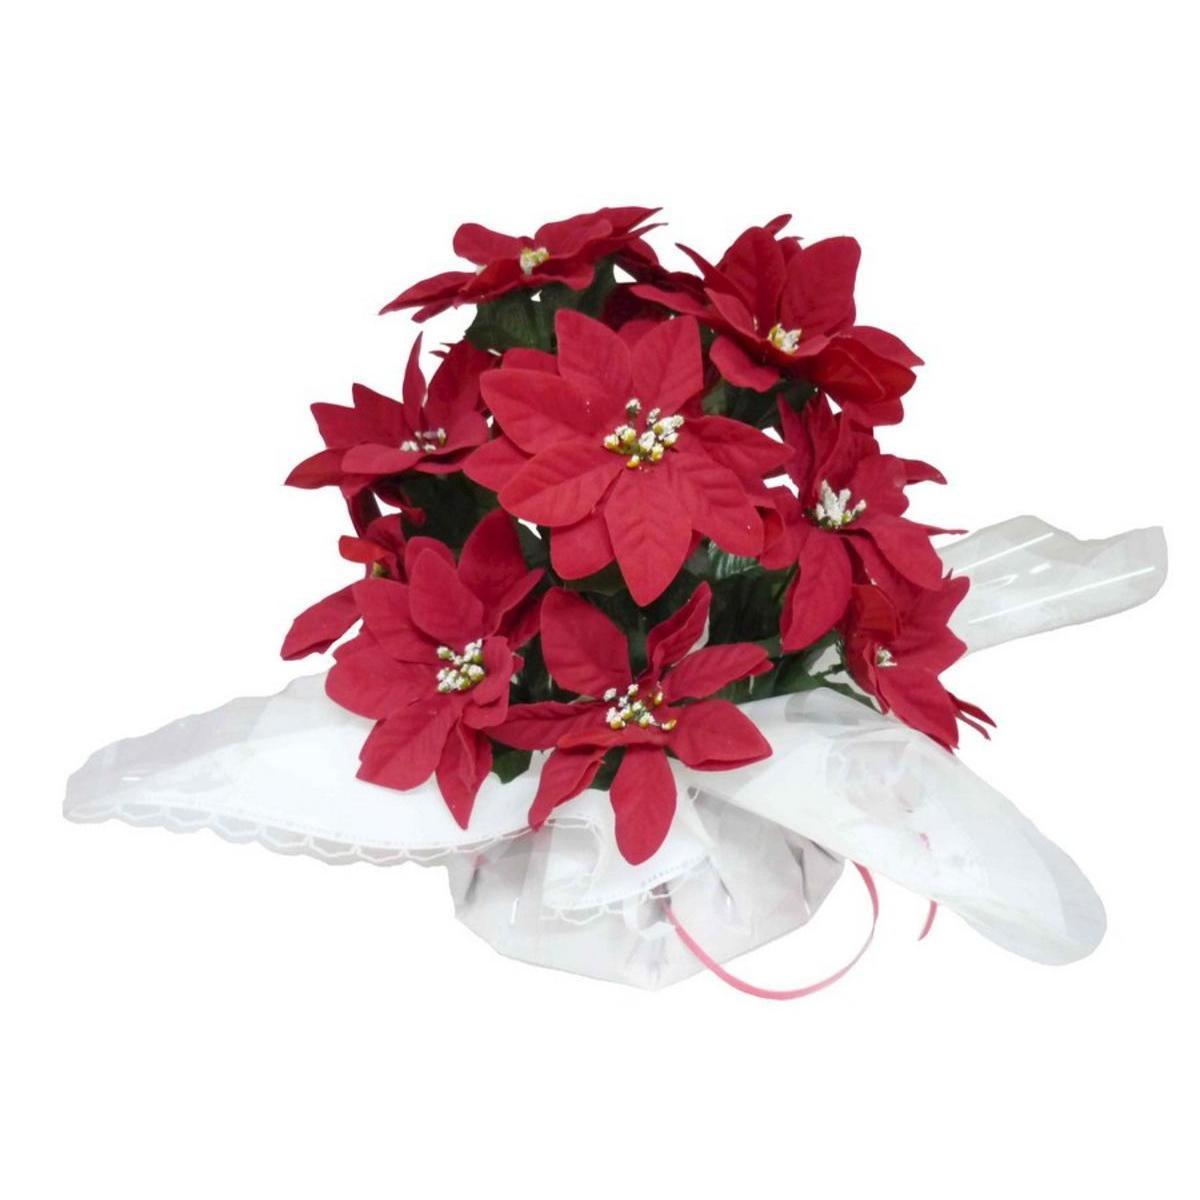 Bouquet bulle poinsettia rouge - Plastique - Ø 24 x H 24 cm - Rouge et blanc